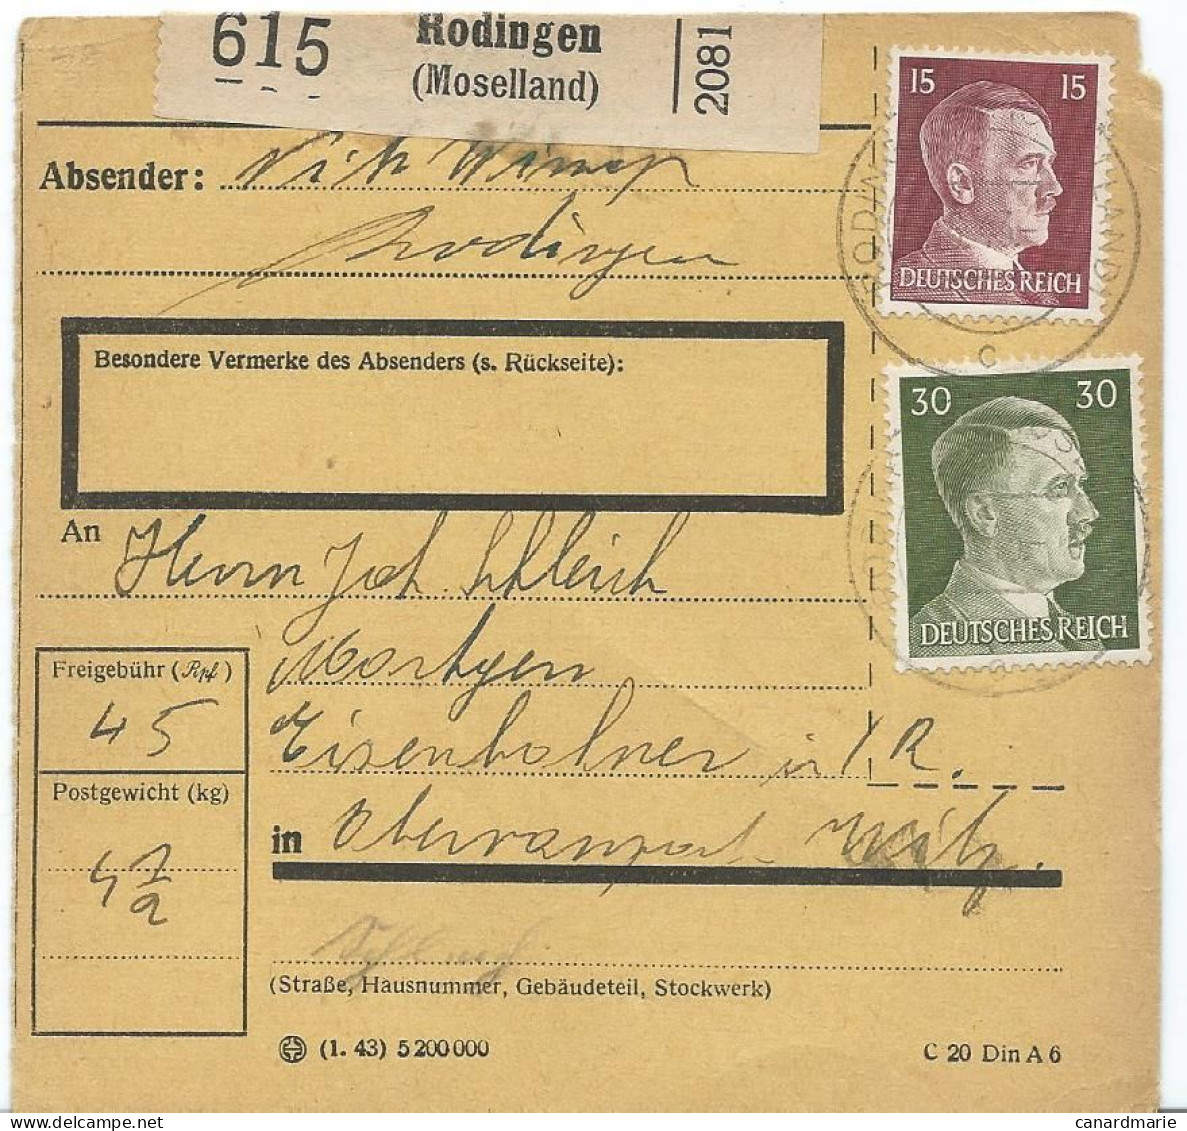 BULLETIN DE COLIS POSTAL 1943 AVEC ETIQUETTE DE RODINGEN (MOSELLAND) - 1940-1944 Occupation Allemande